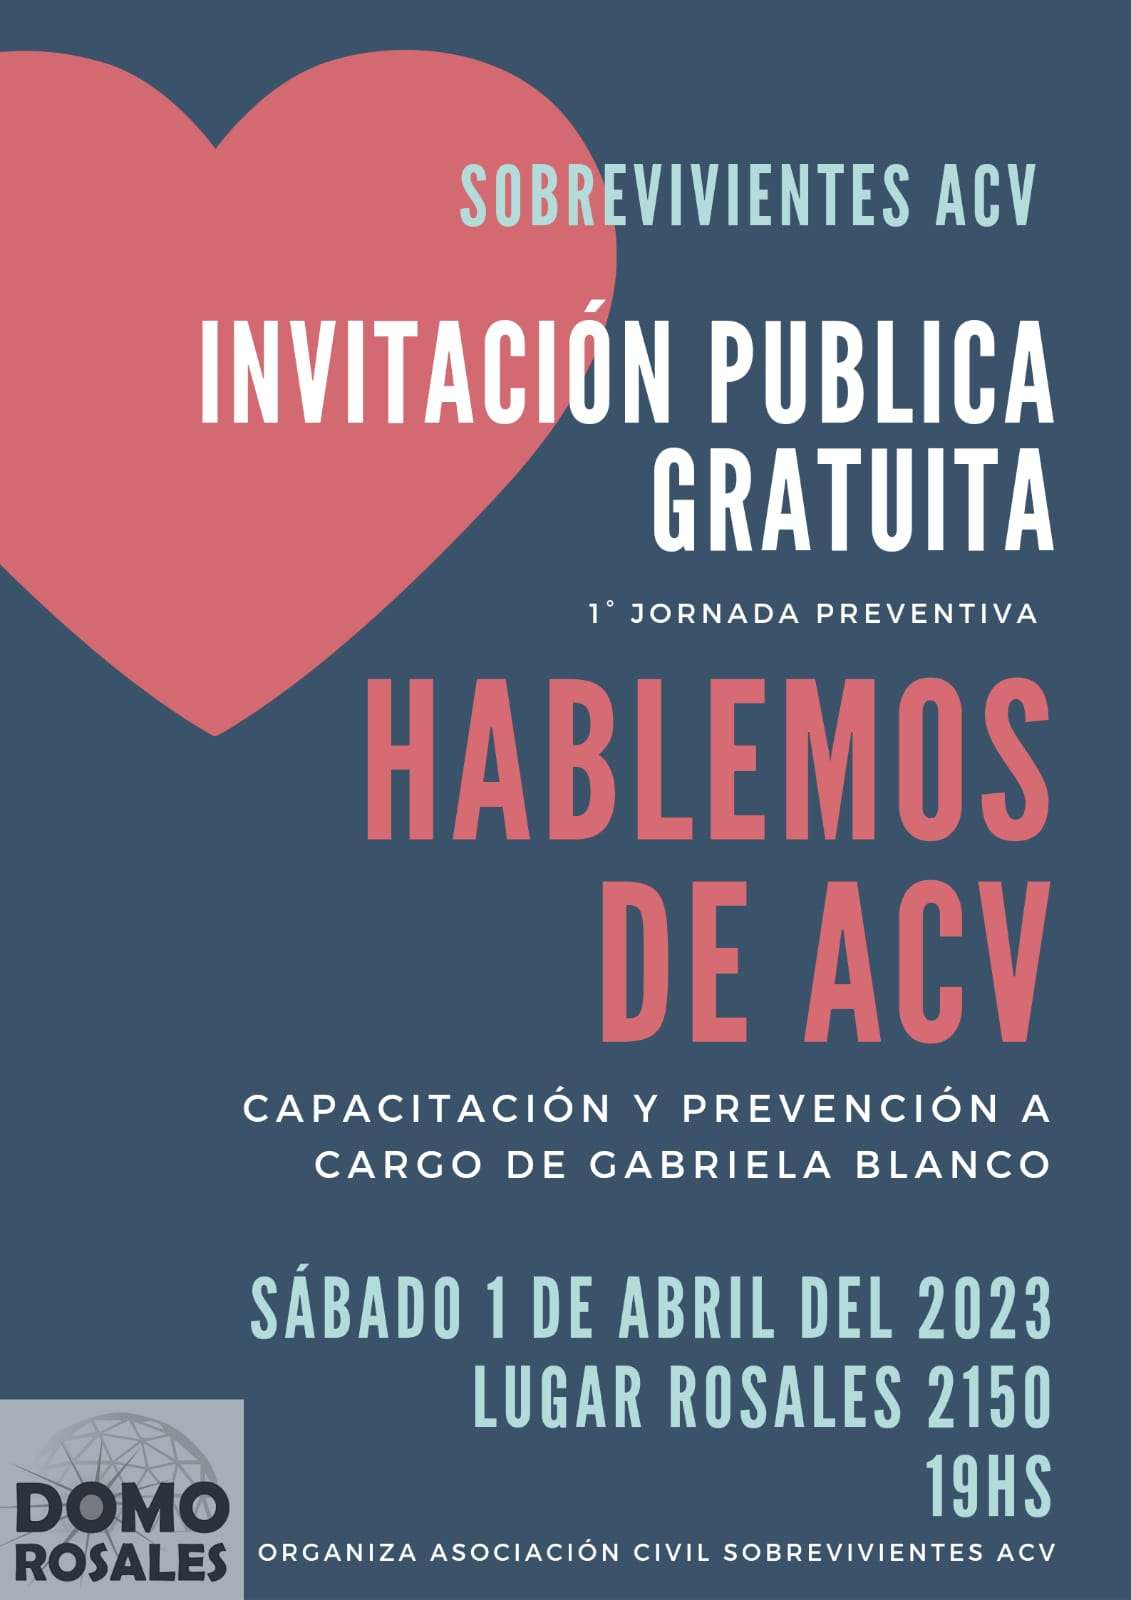 Invitan a una charla gratuita sobre prevención de ACV